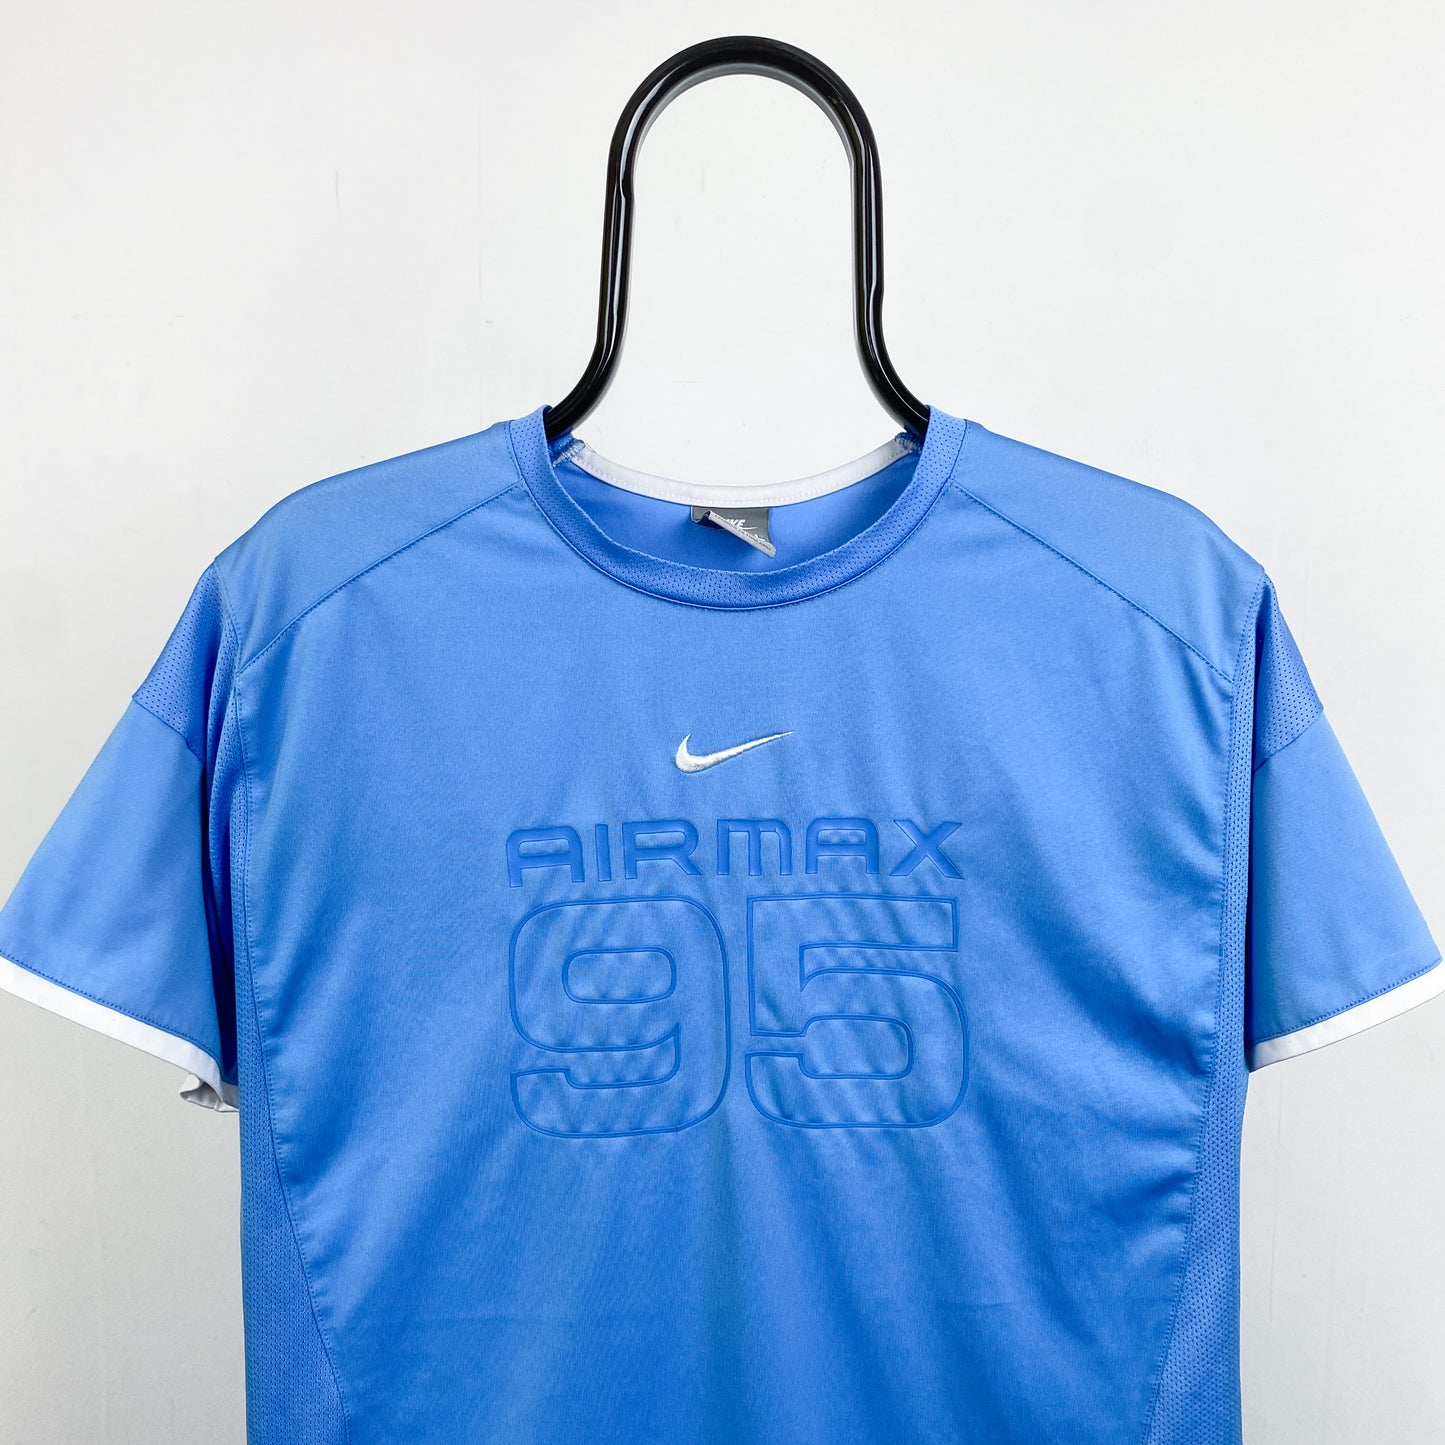 00s Nike Air Max 95 T-Shirt Blue XS